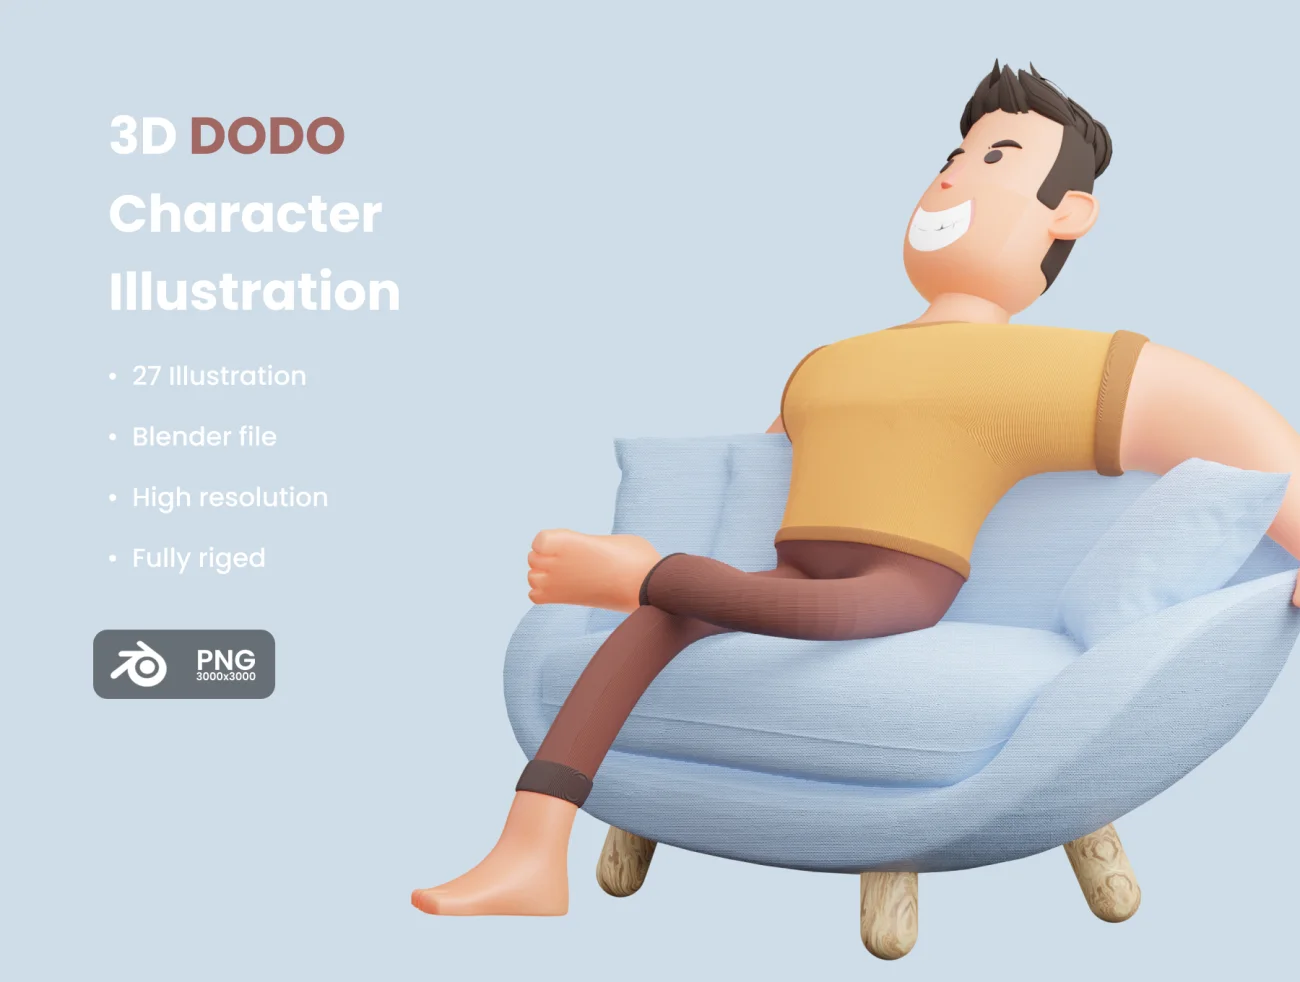 卡通3D人物插画套件 DODO 3D Illustration-3D/图标、人物插画、场景插画、学习生活、插画-到位啦UI